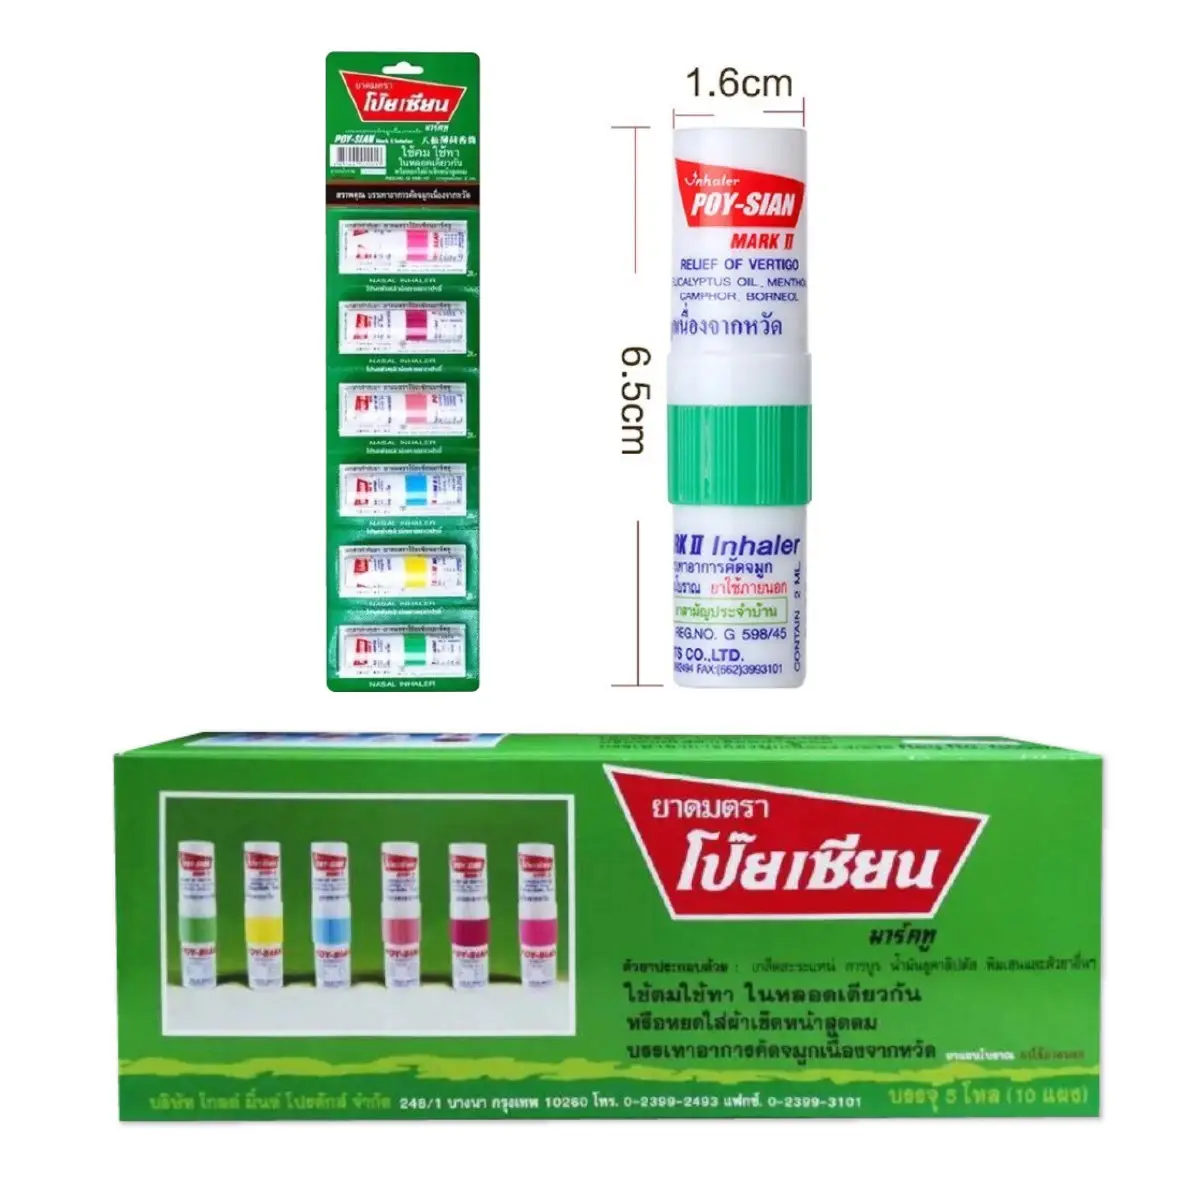 Poy Sian 2-in-1-Inhalator für ätherische Öle, Nasenspray und Kräuter aroma therapie. Zutaten Kräuter und Salz inhalator aus Thailand.